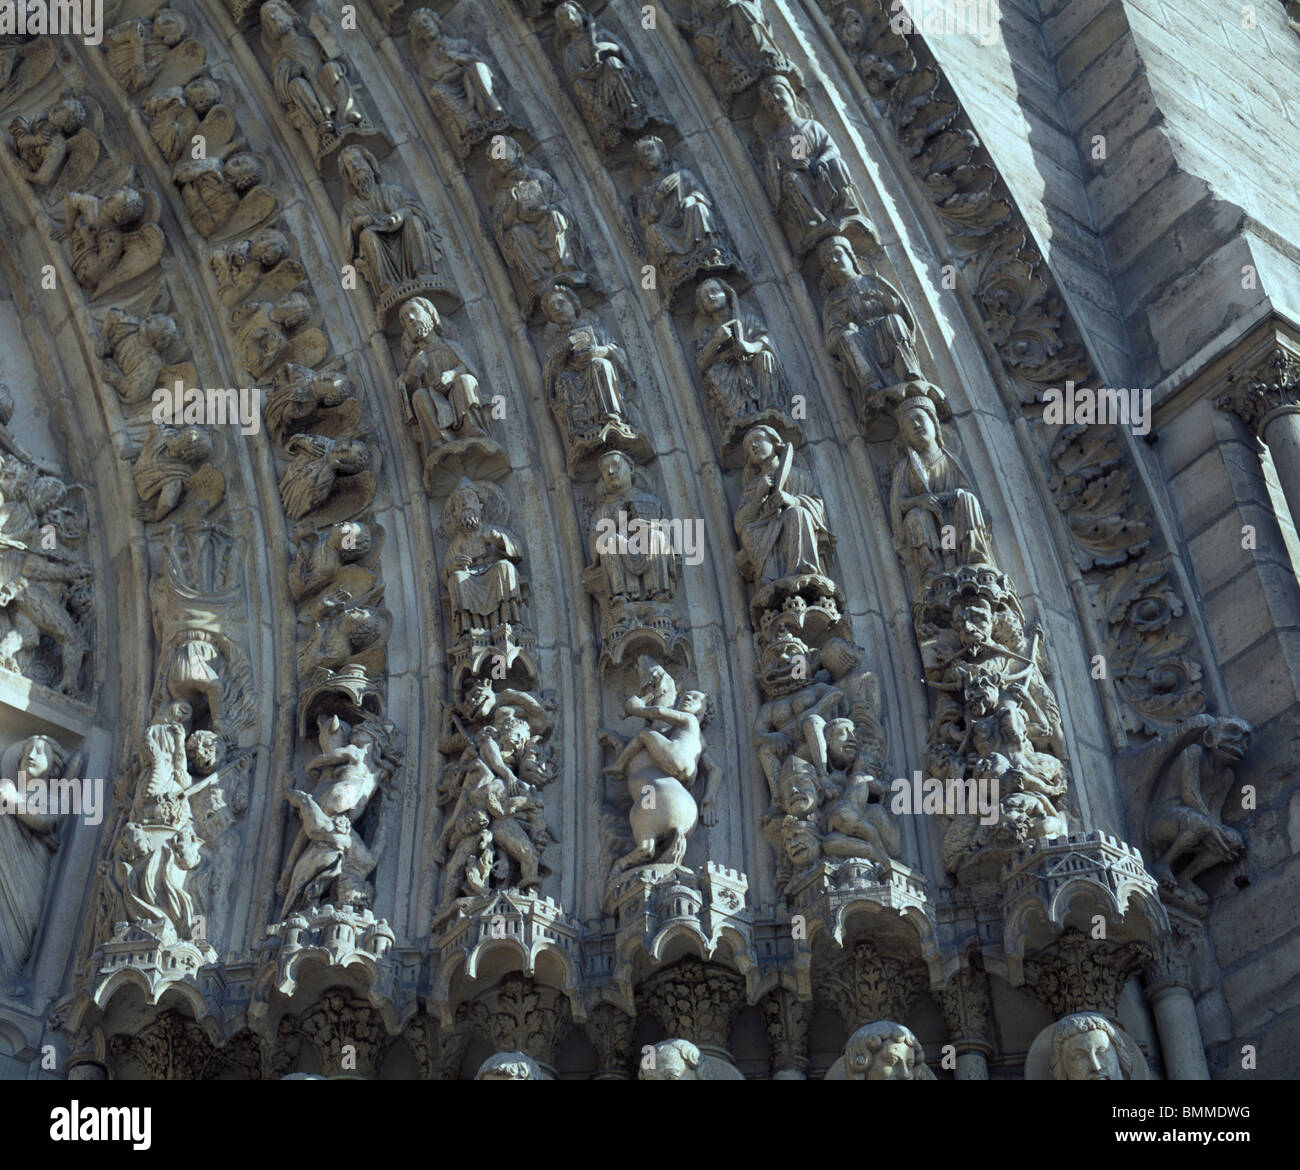 Notre Dame, Paris, France. Sculpture d'anges saints et les bêtes sur le portail central de la façade ouest de la cathédrale gothique française. Banque D'Images